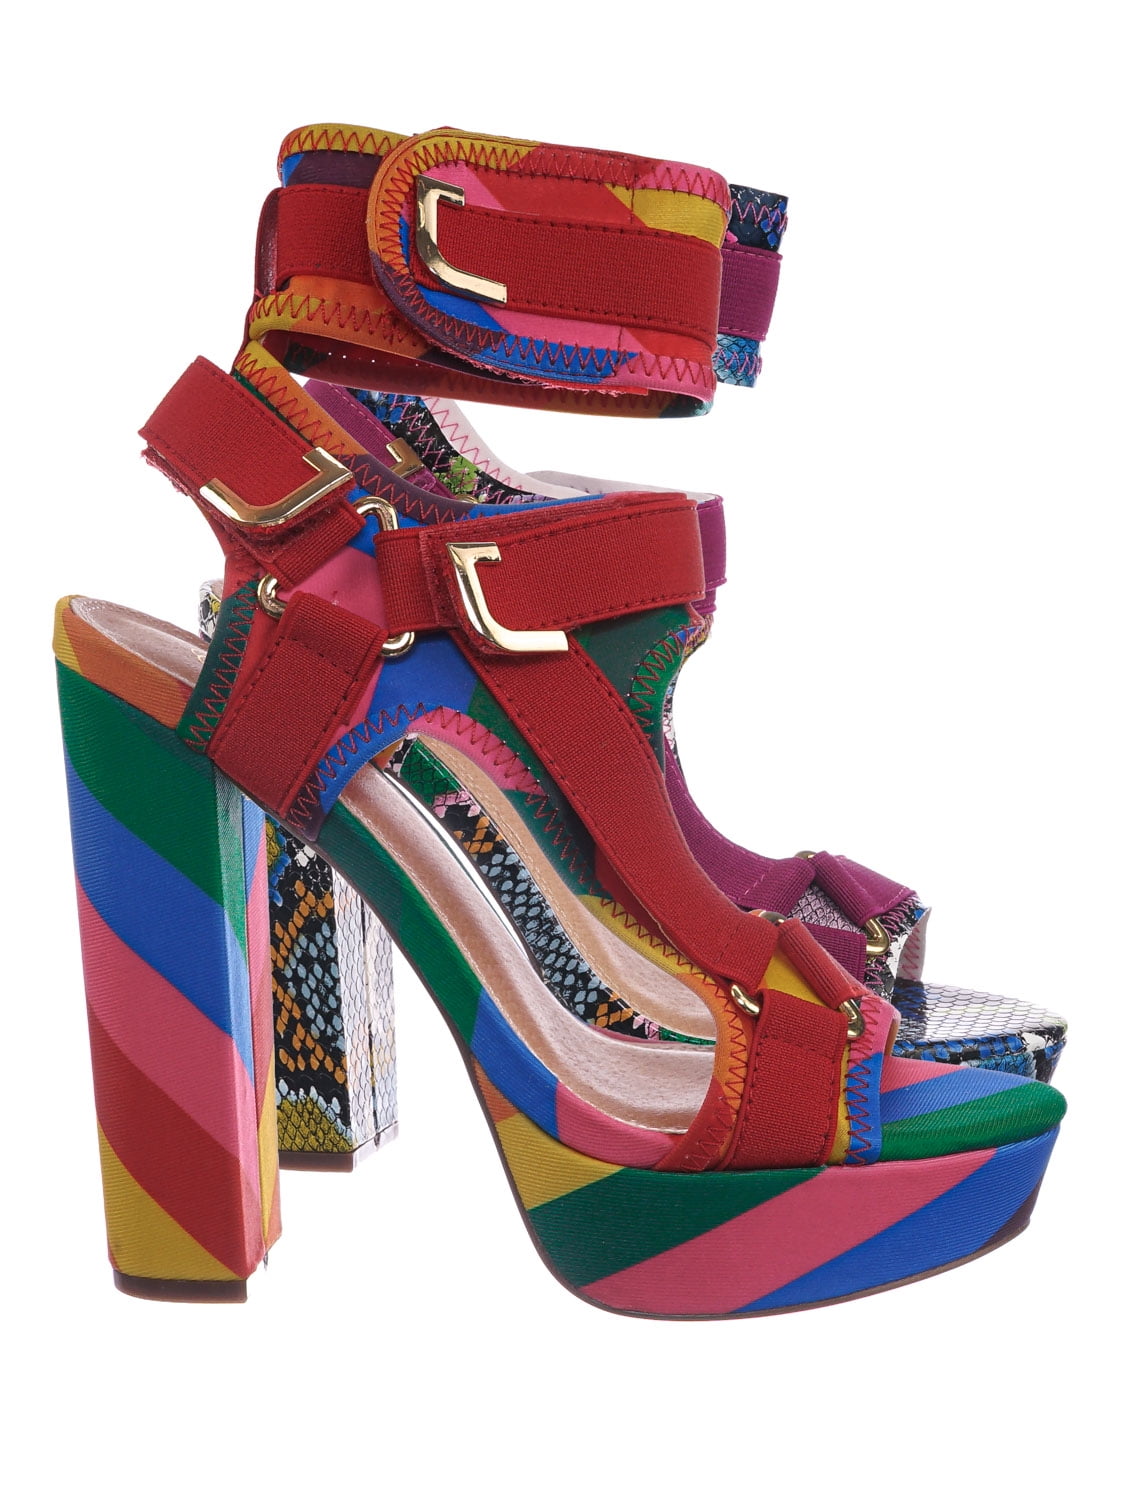 liliana glam rock heels